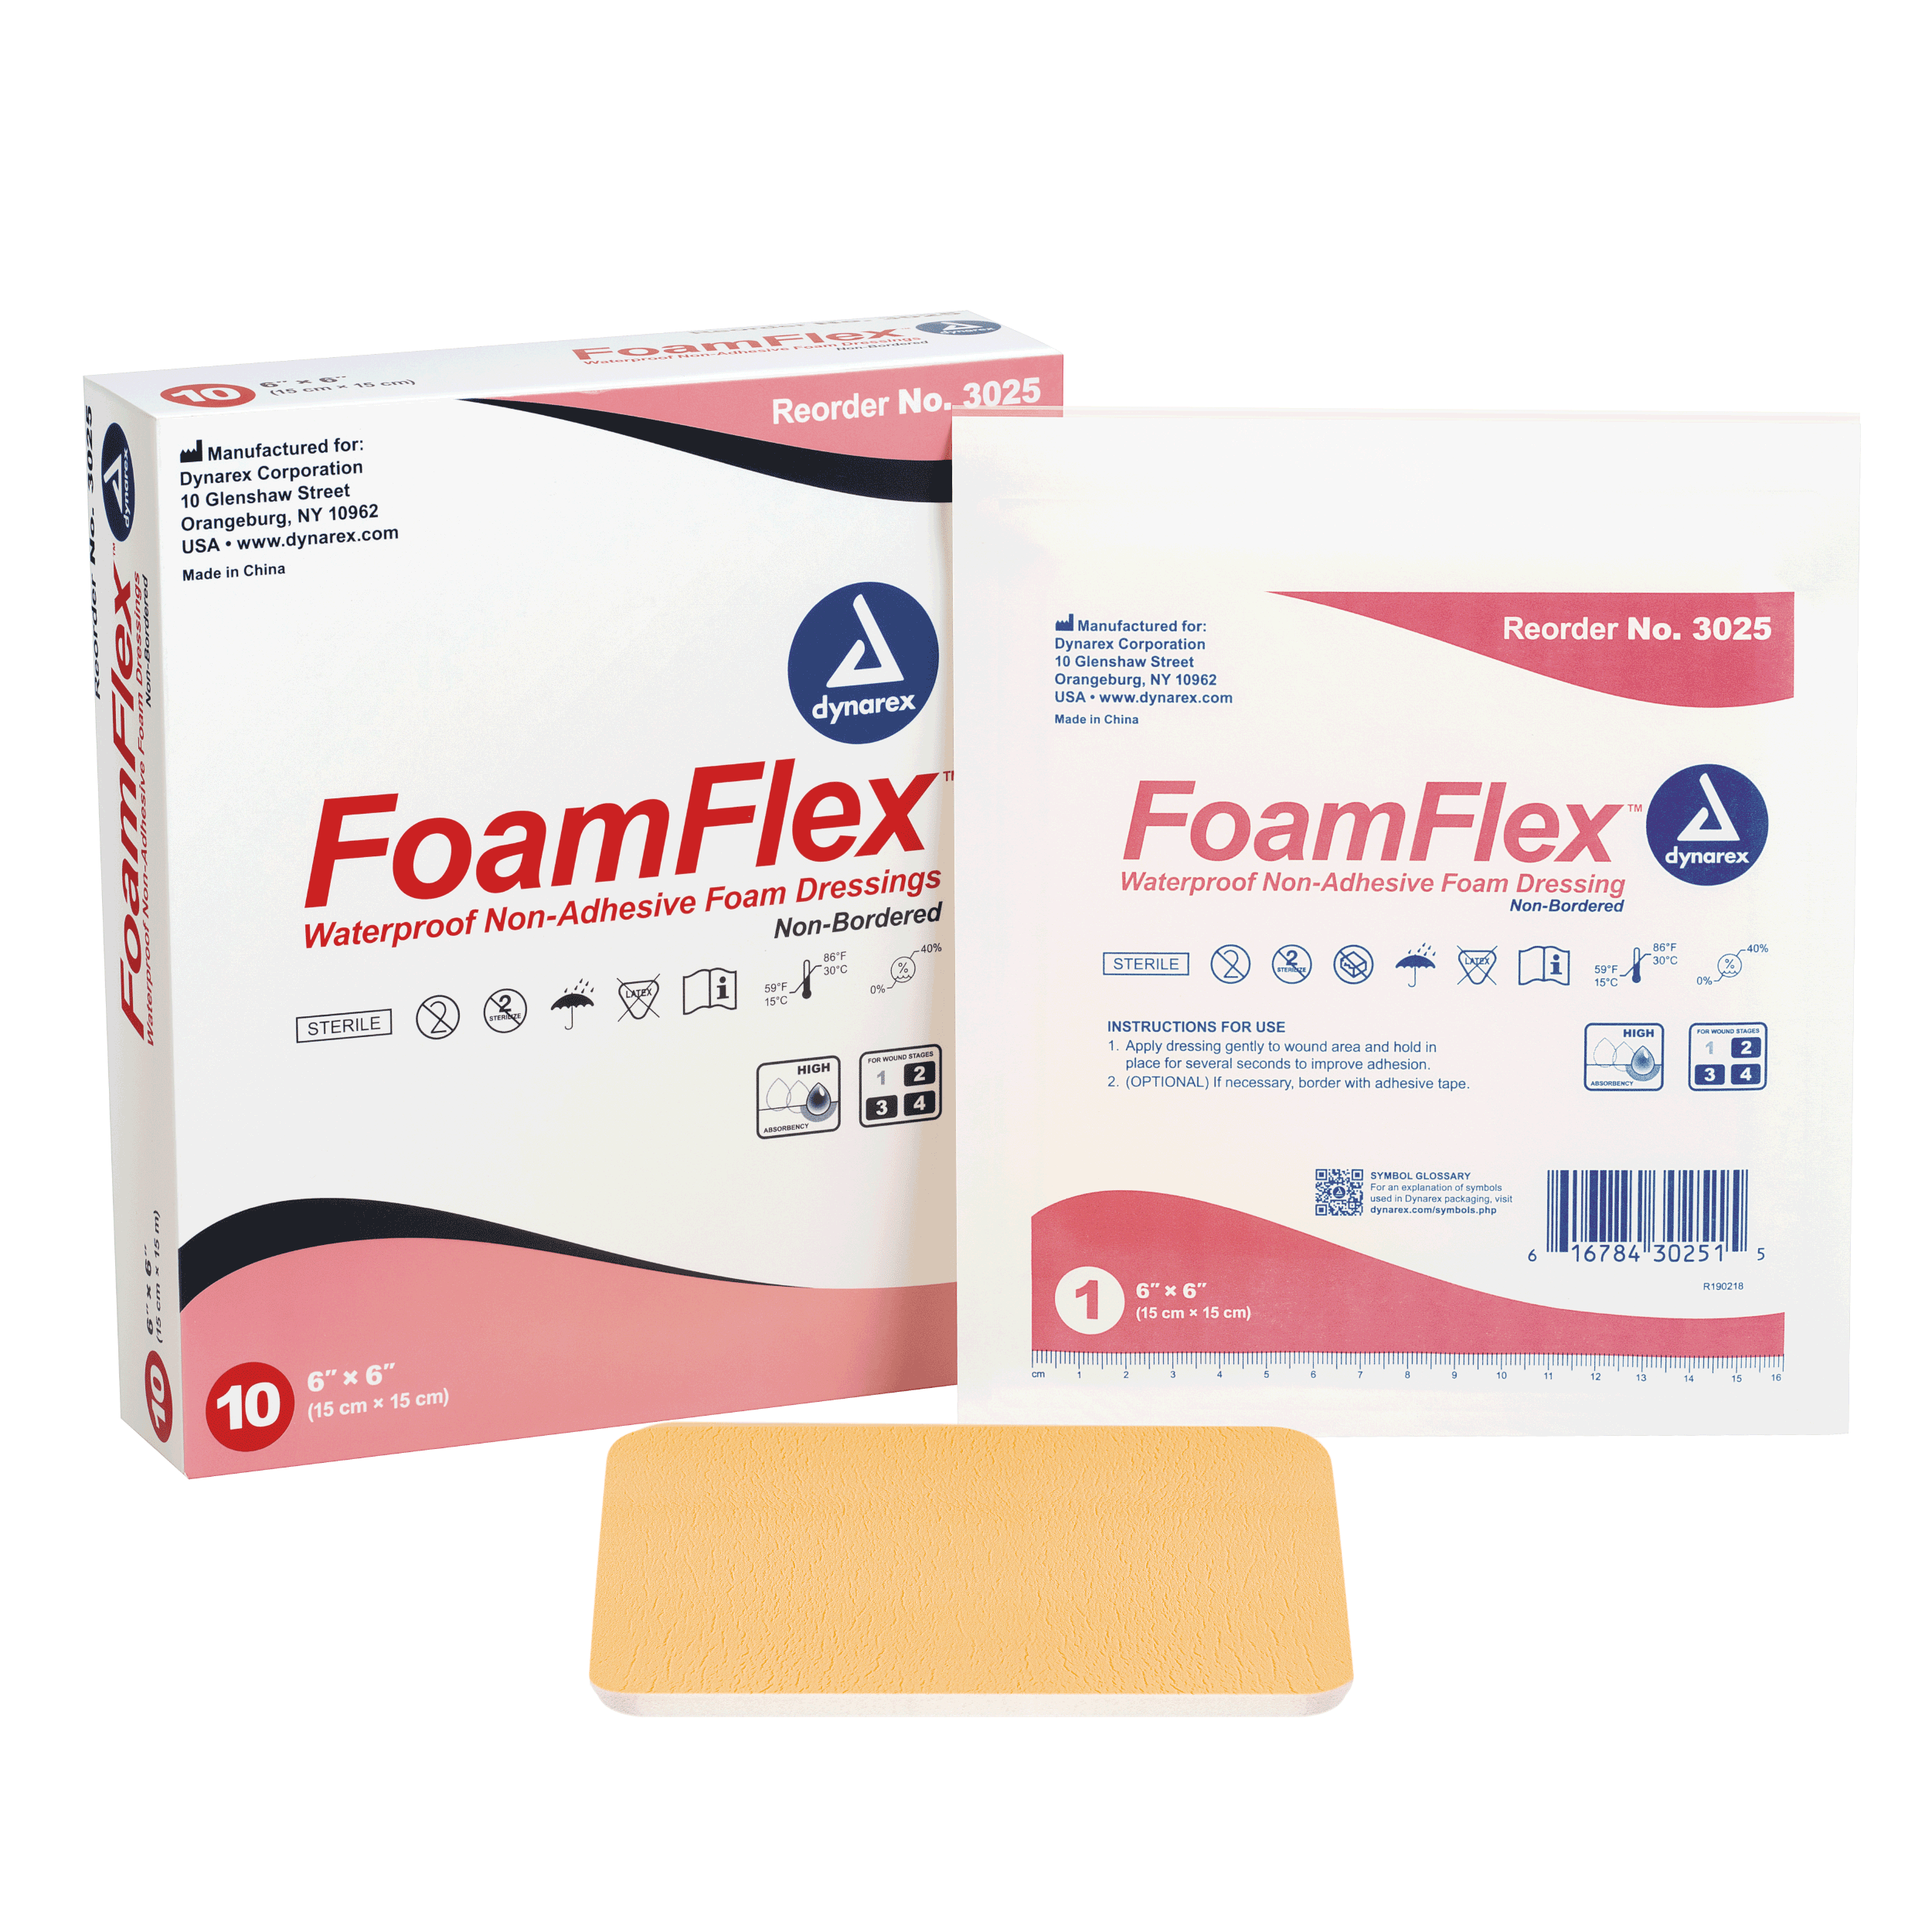 FoamFlex™ Non-Adhesive Waterproof Foam Dressing - 6